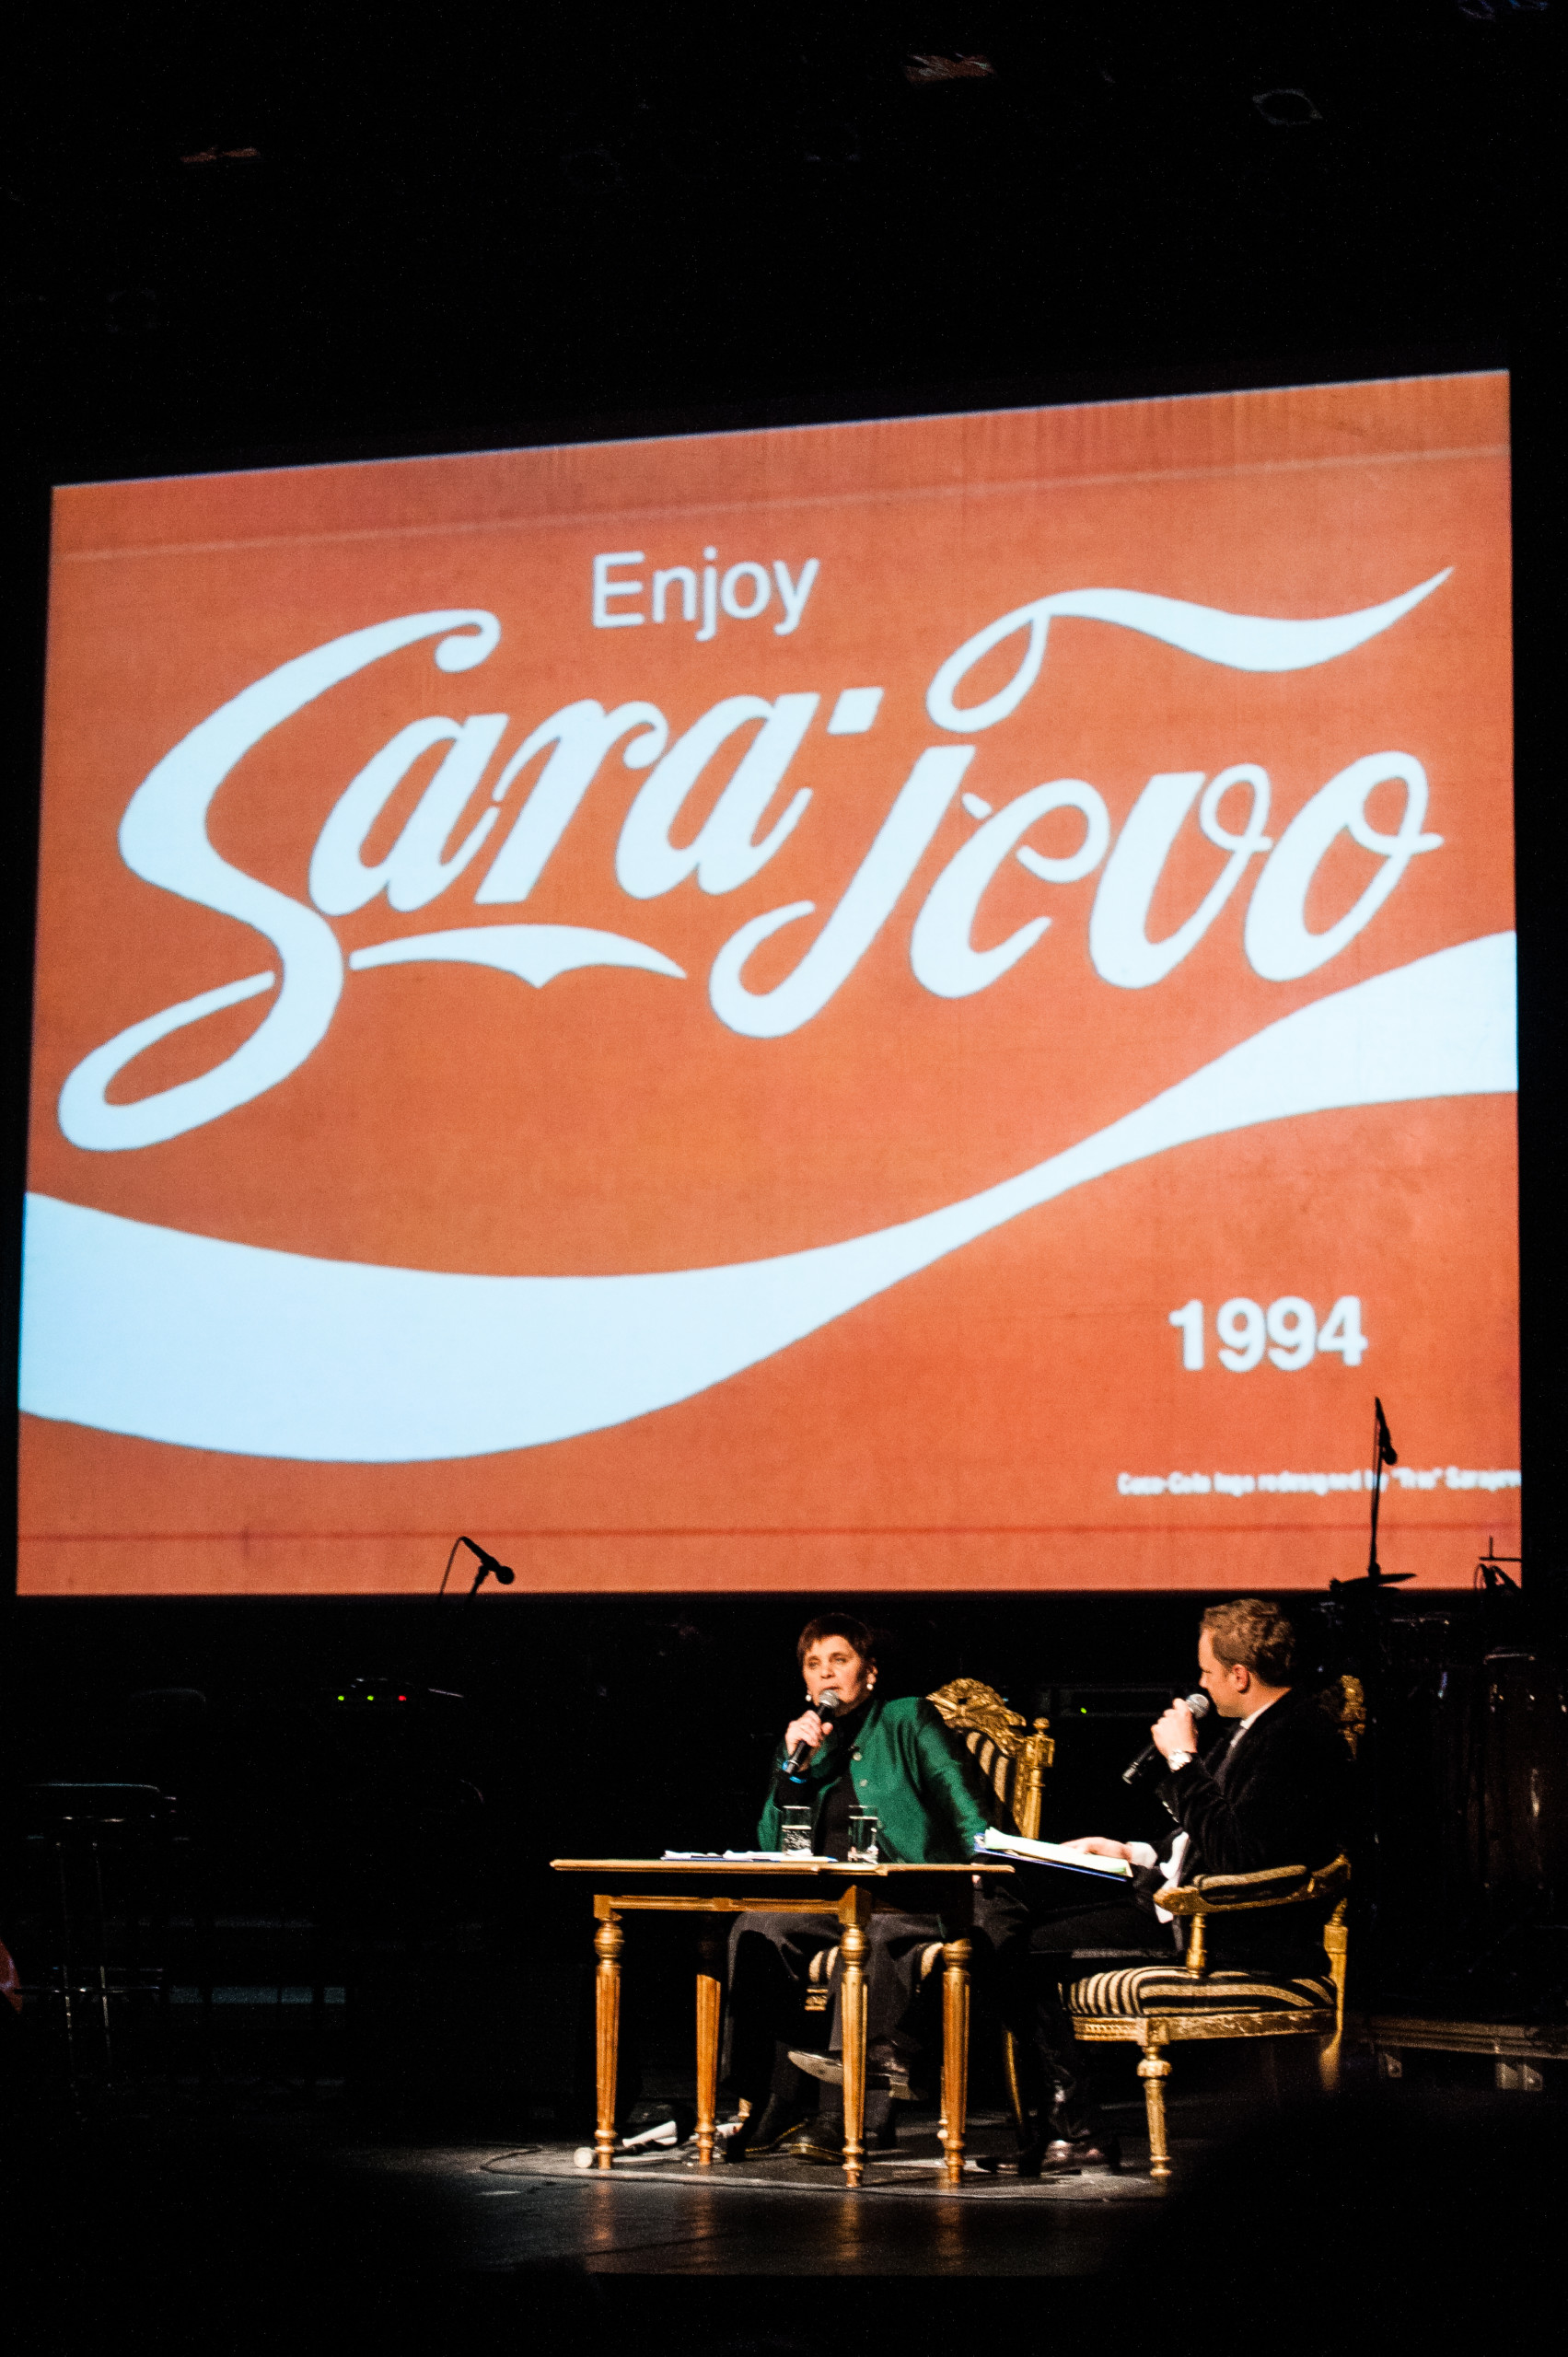 Zdjęcie Janiny z Maciejem Stuhrem a za nimi napis "Enjoy Sarajevo" stylizowany na logo Coca-Coli.